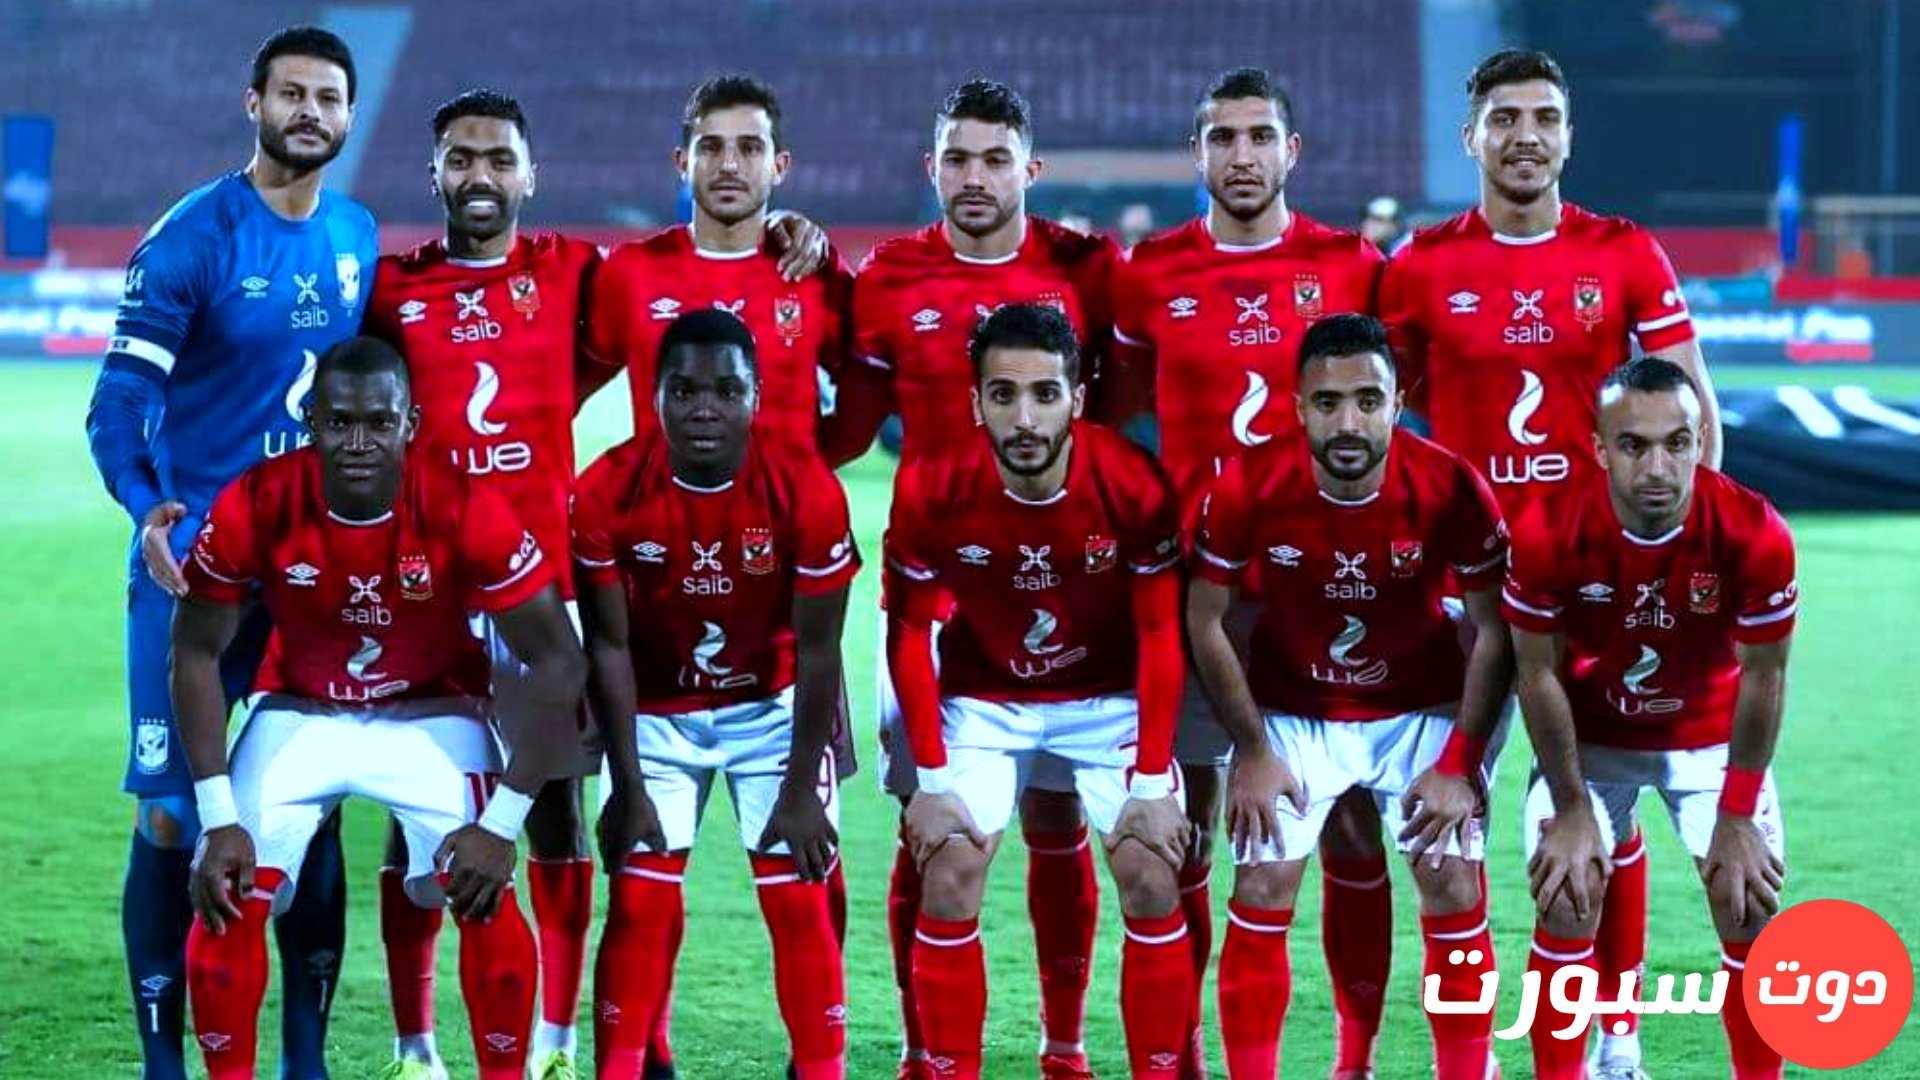 موعد مباراة الأهلي القادمة في الدوري المصري الممتاز | دوت سبورت